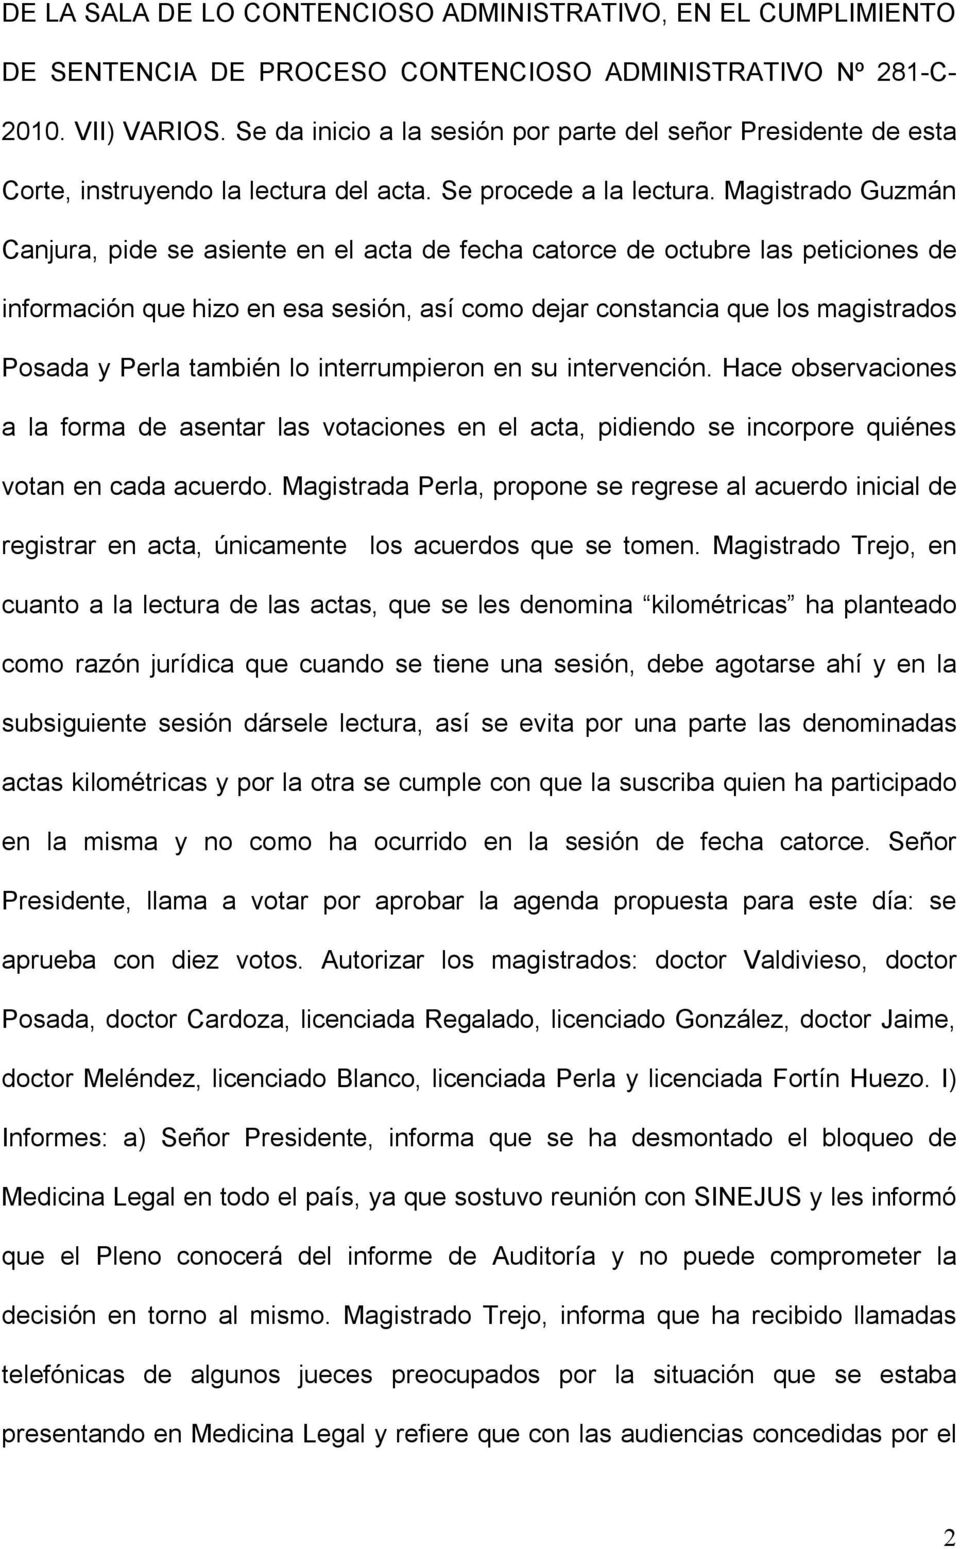 Magistrado Guzmán Canjura, pide se asiente en el acta de fecha catorce de octubre las peticiones de información que hizo en esa sesión, así como dejar constancia que los magistrados Posada y Perla